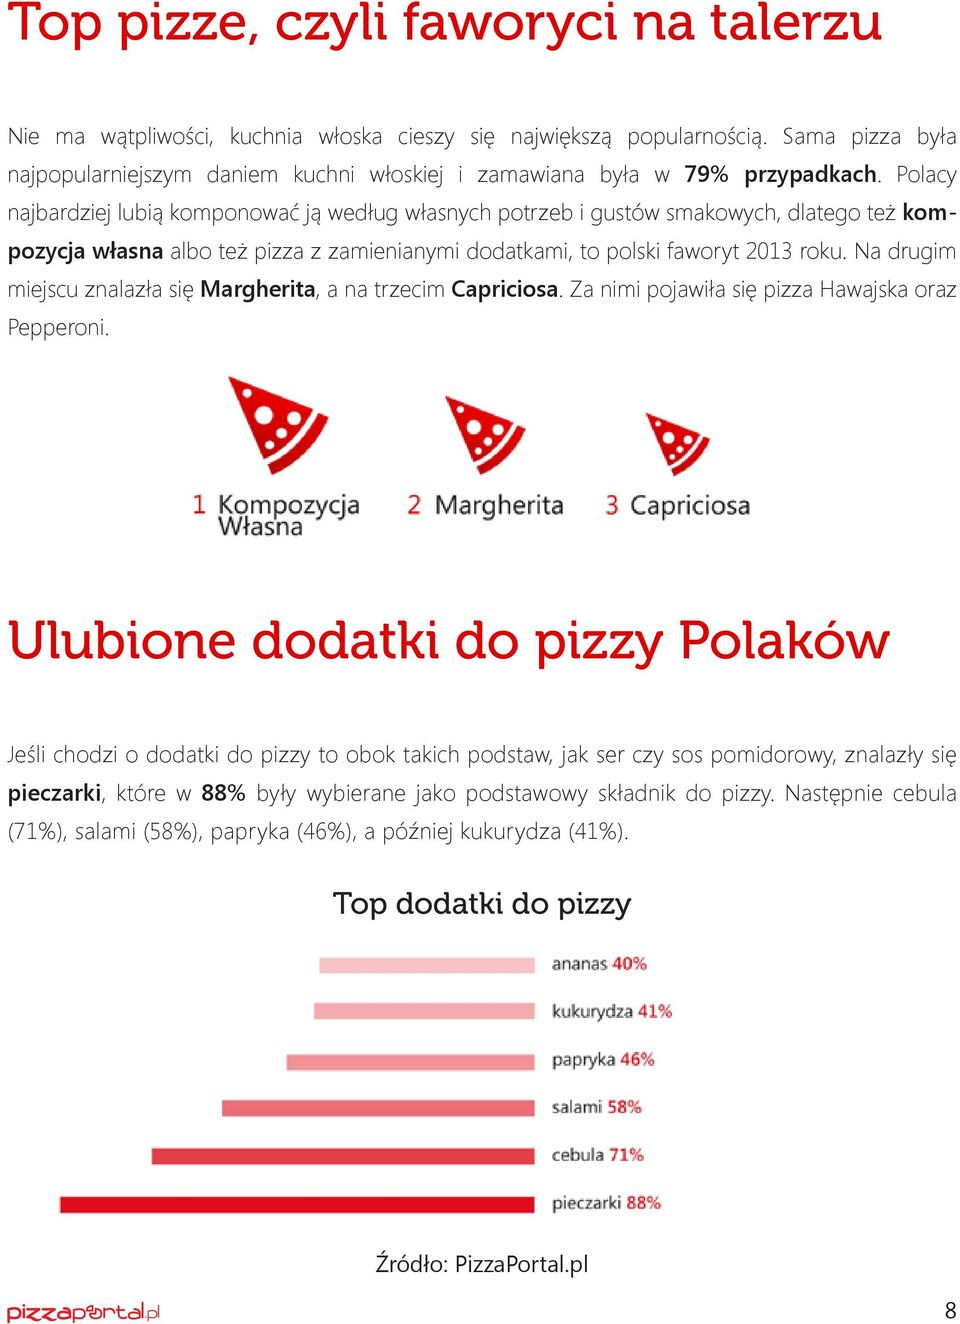 Polacy najbardziej lubią komponować ją według własnych potrzeb i gustów smakowych, dlatego też kompozycja własna albo też pizza z zamienianymi dodatkami, to polski faworyt 2013 roku.